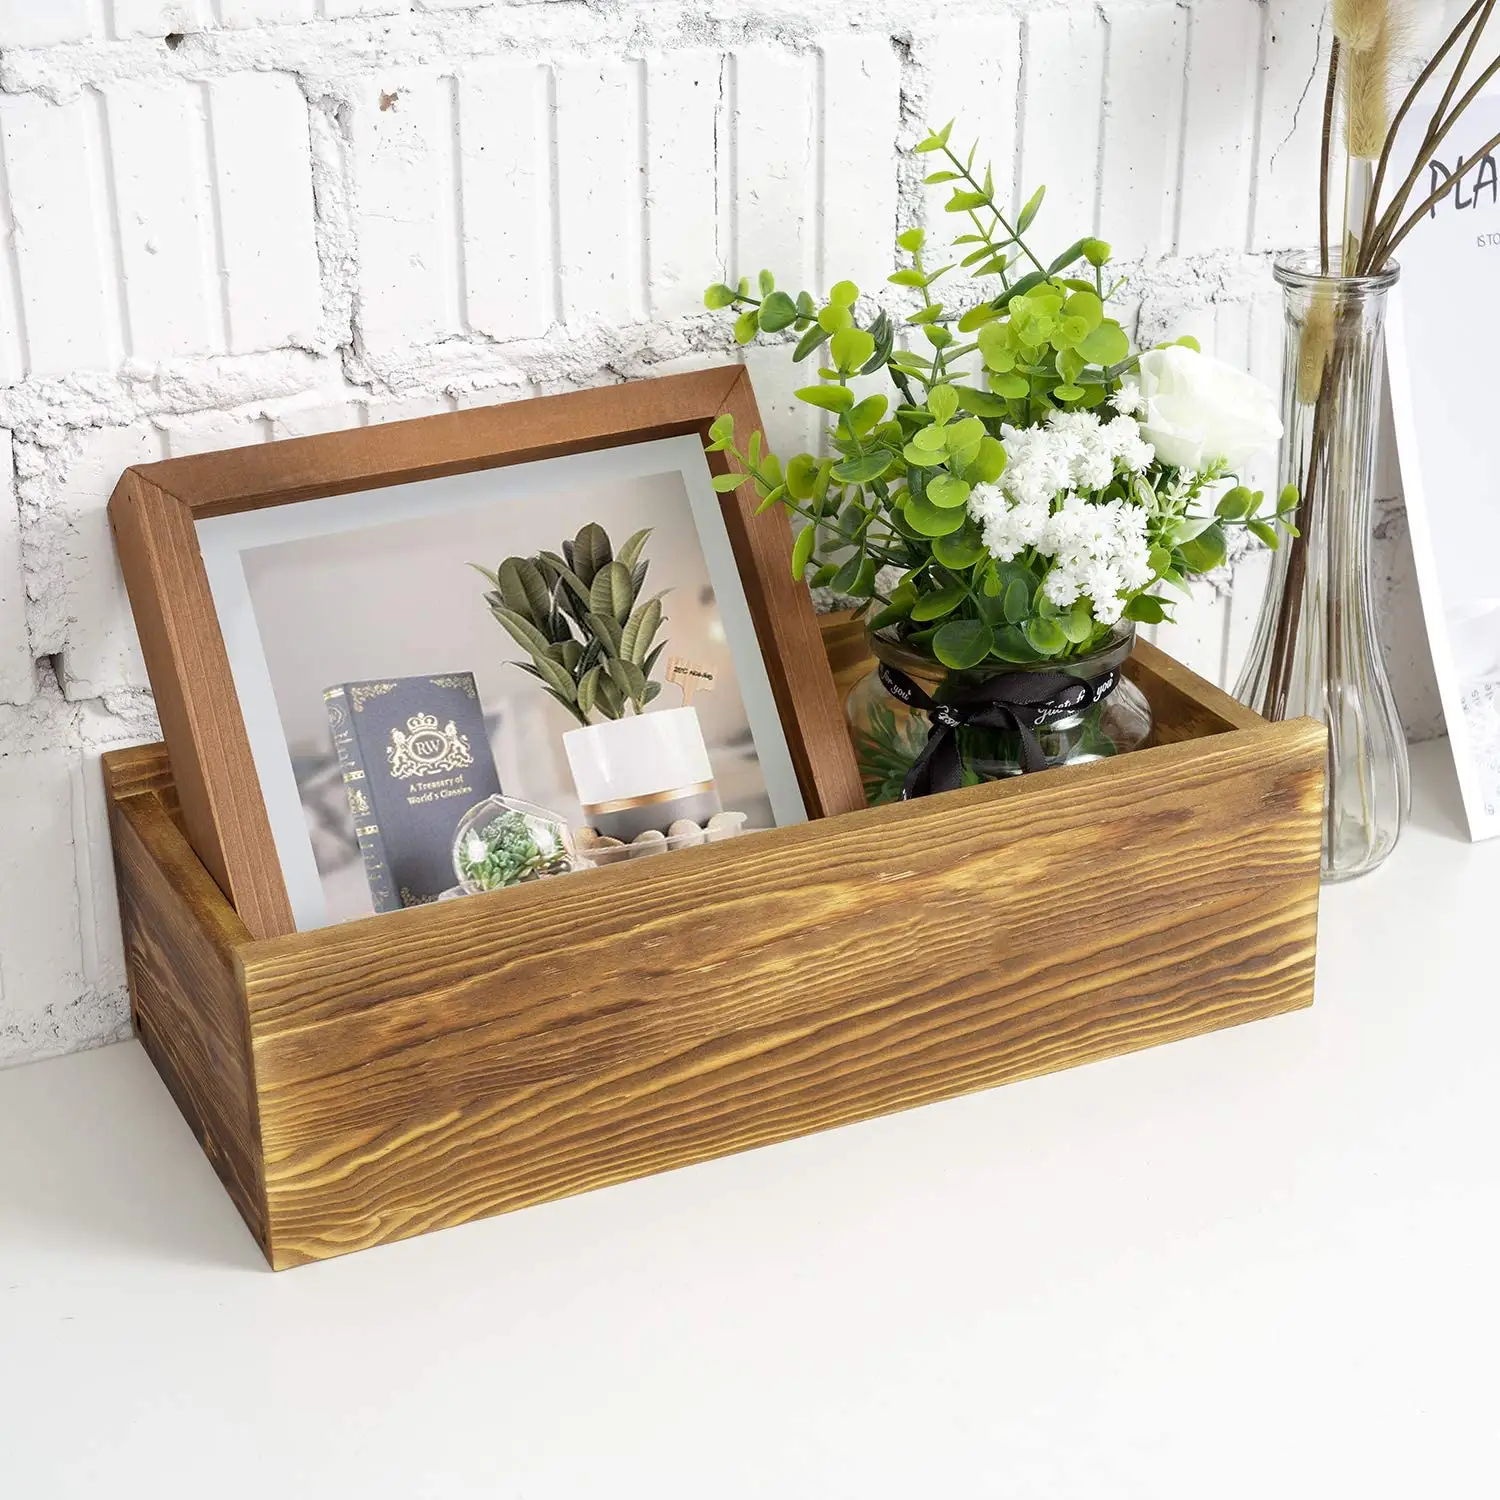 Caja de decoración para baño, soporte de papel higiénico, caja rústica de madera, decoración para el hogar